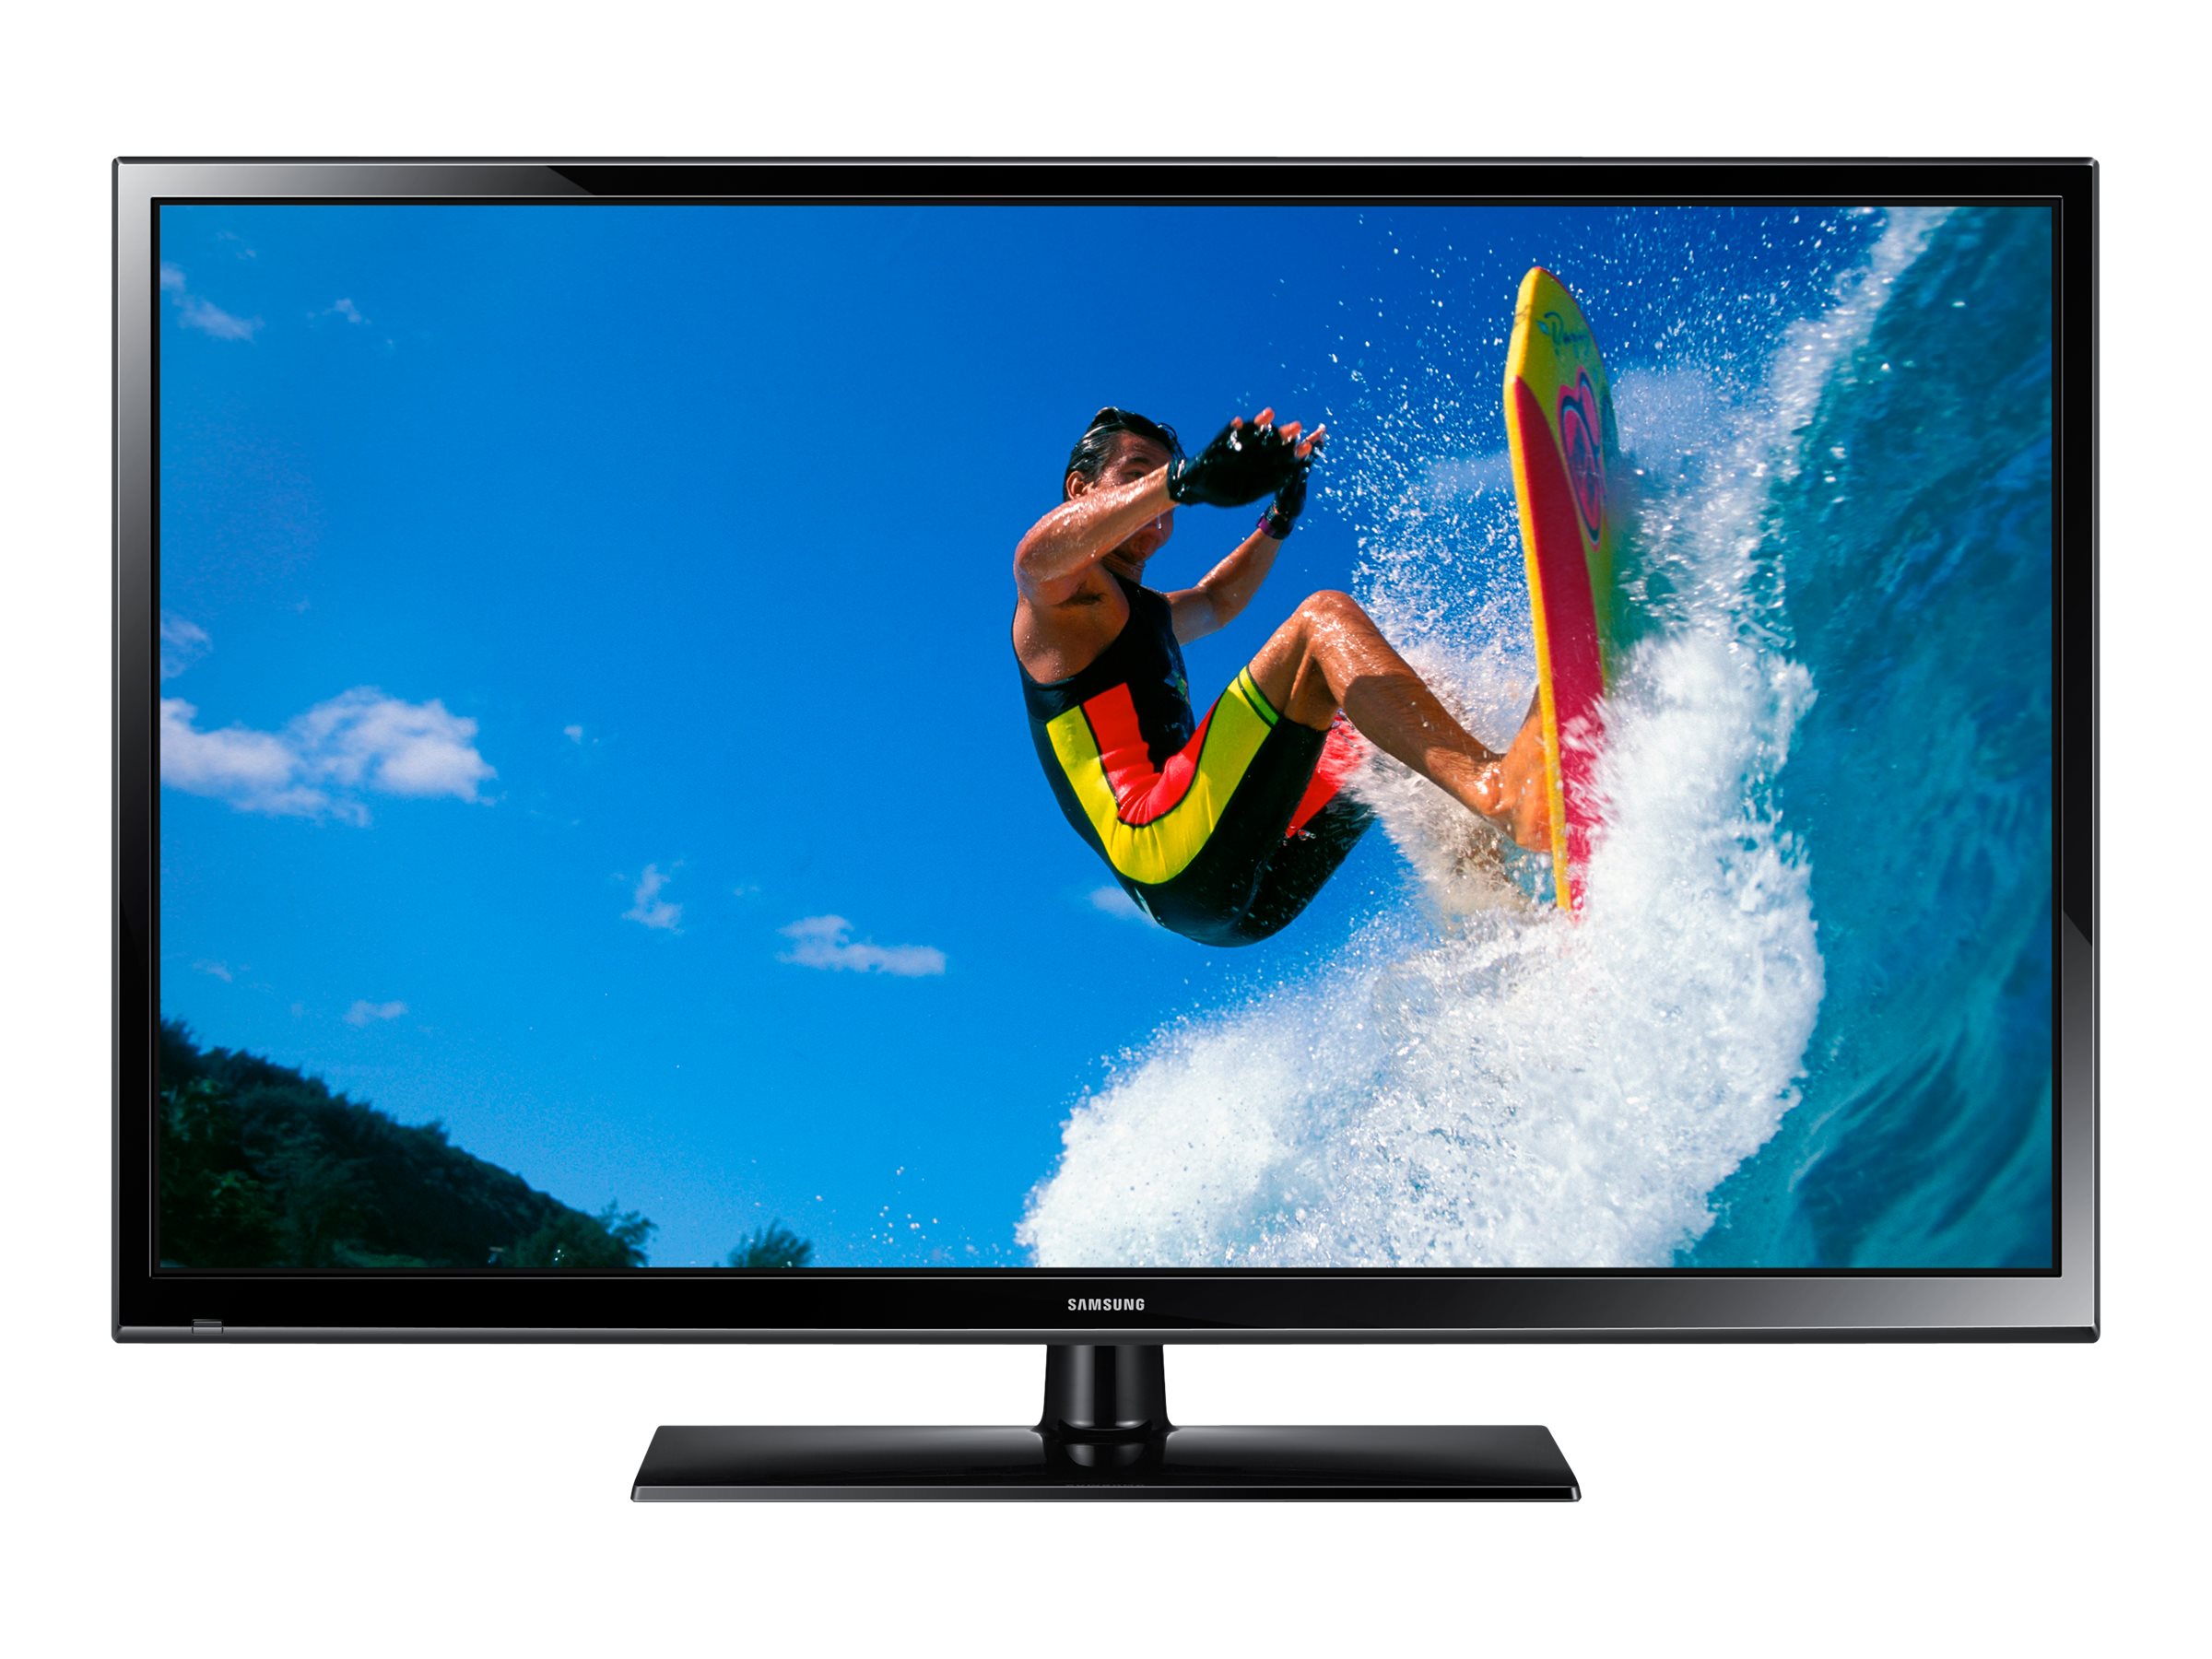 Samsung 51" Class Plasma TV (PN51F4500AF) - image 1 of 4